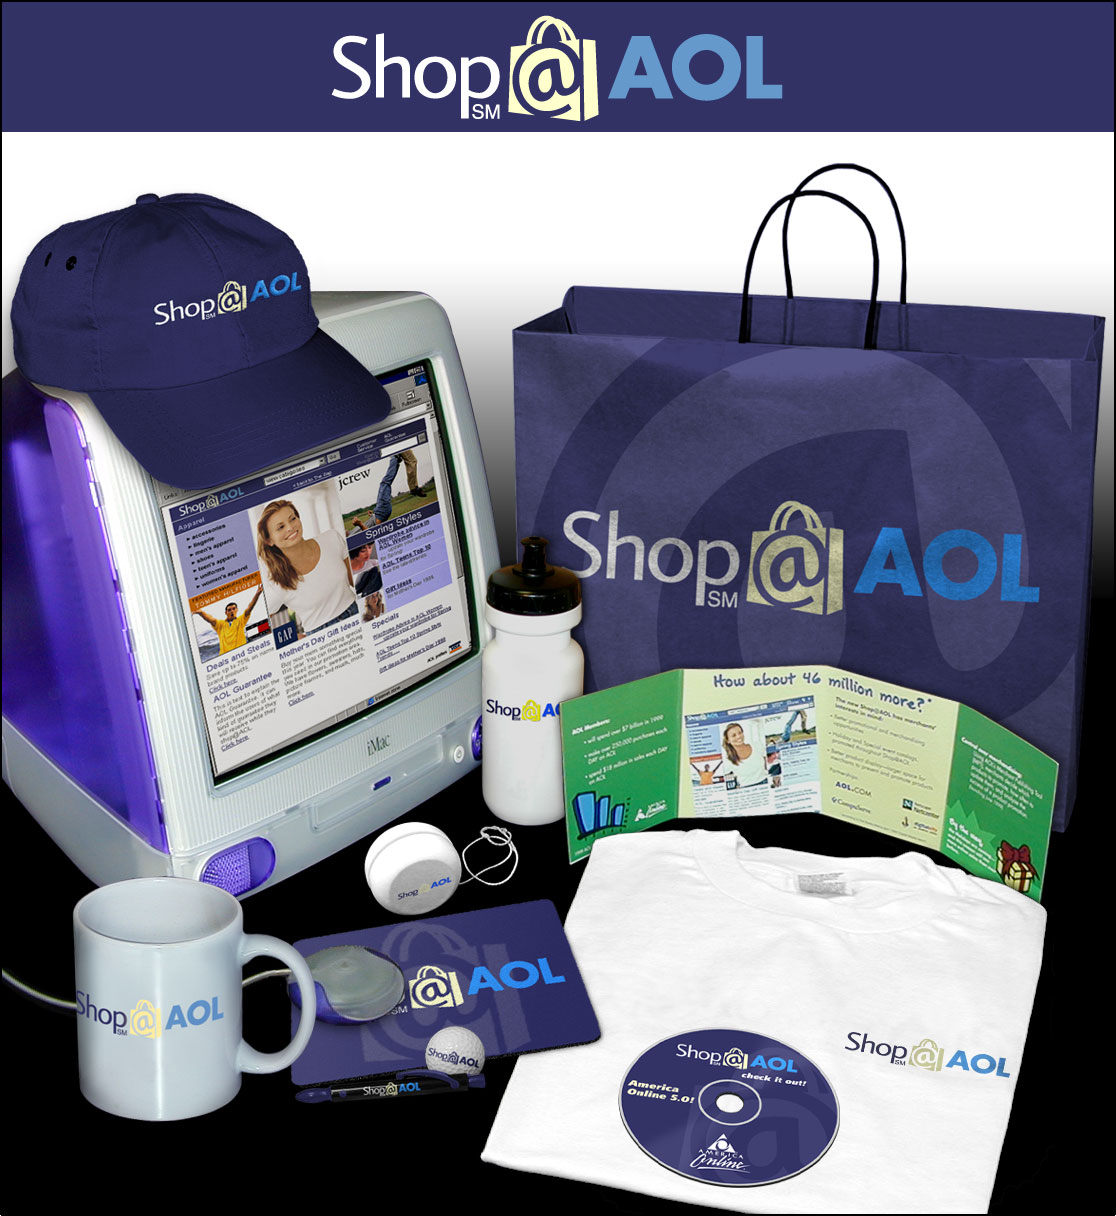 Shop@AOL product concepts